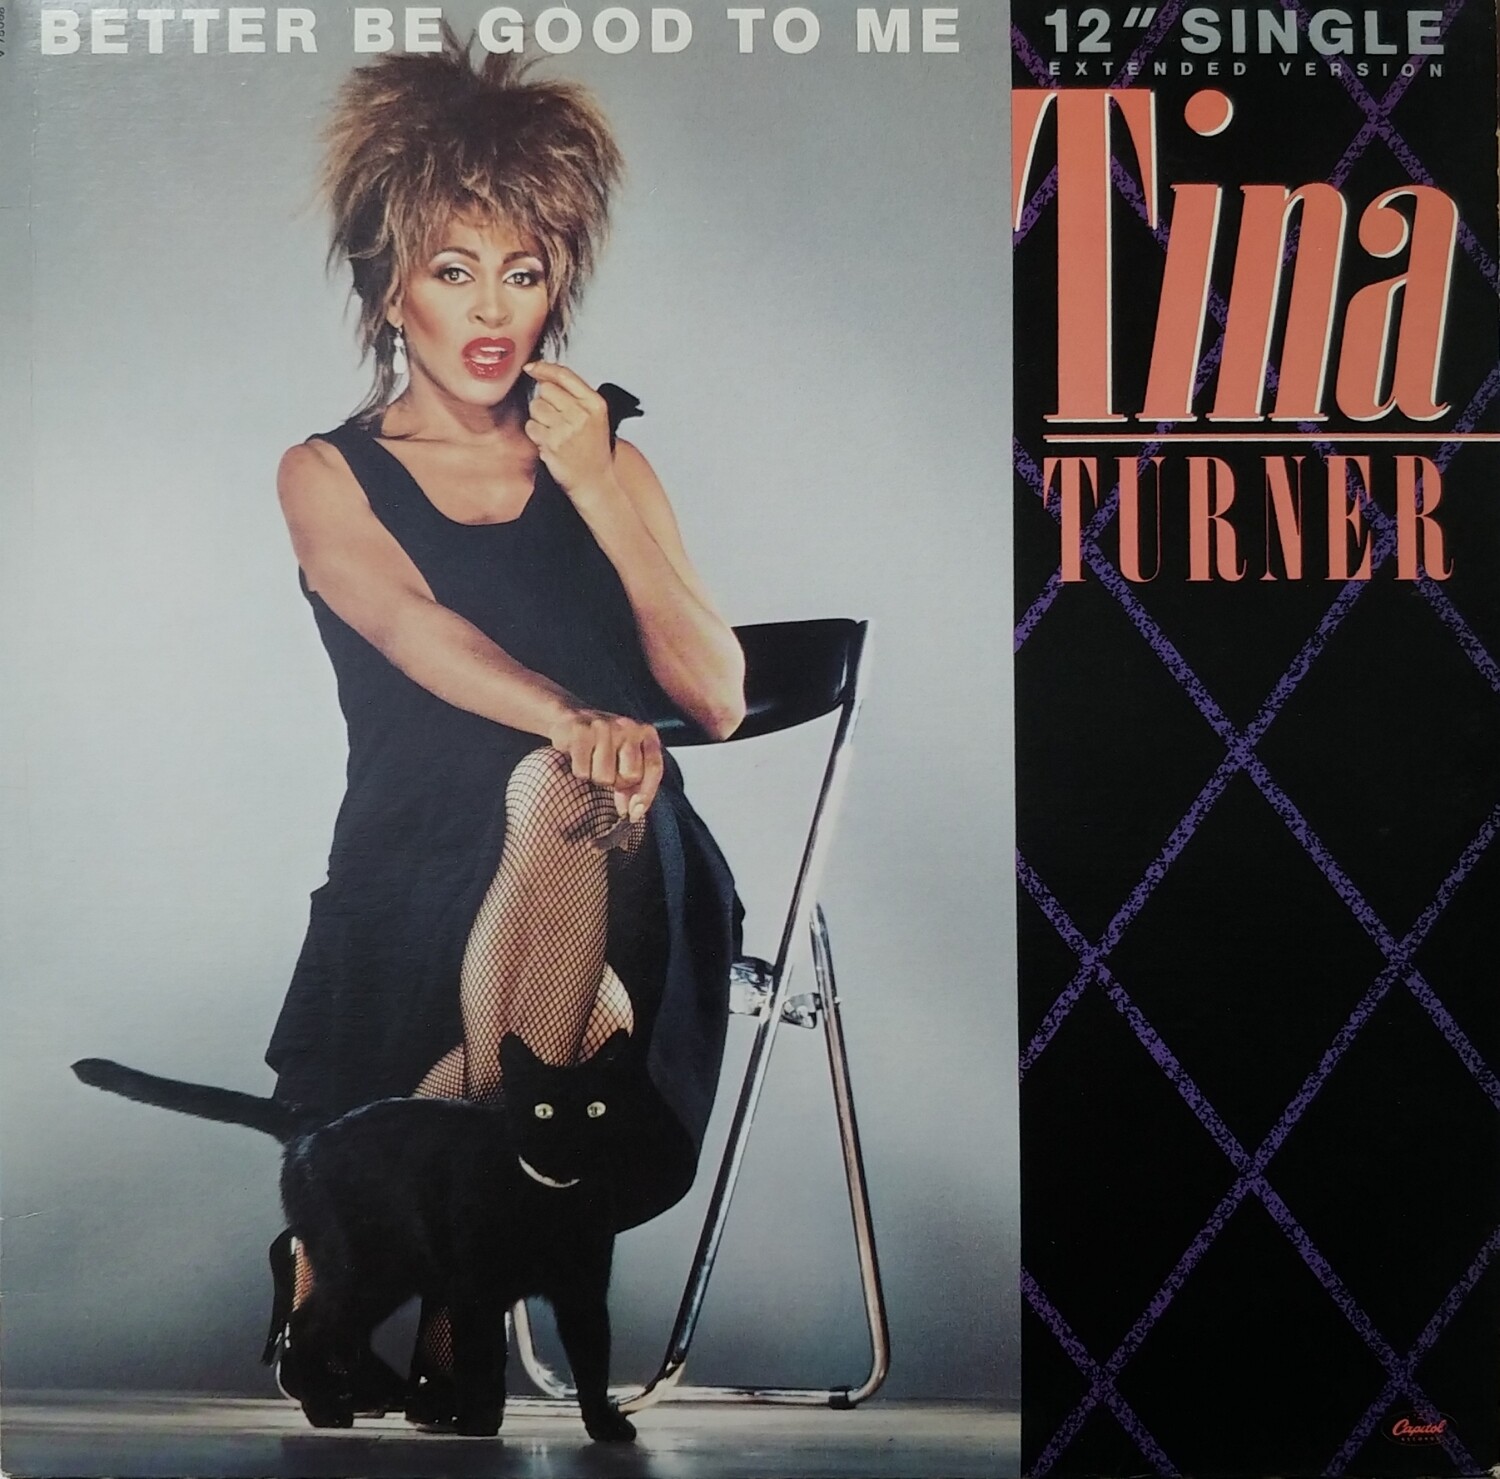 Tina Turner - Better be good to me (MAXI)